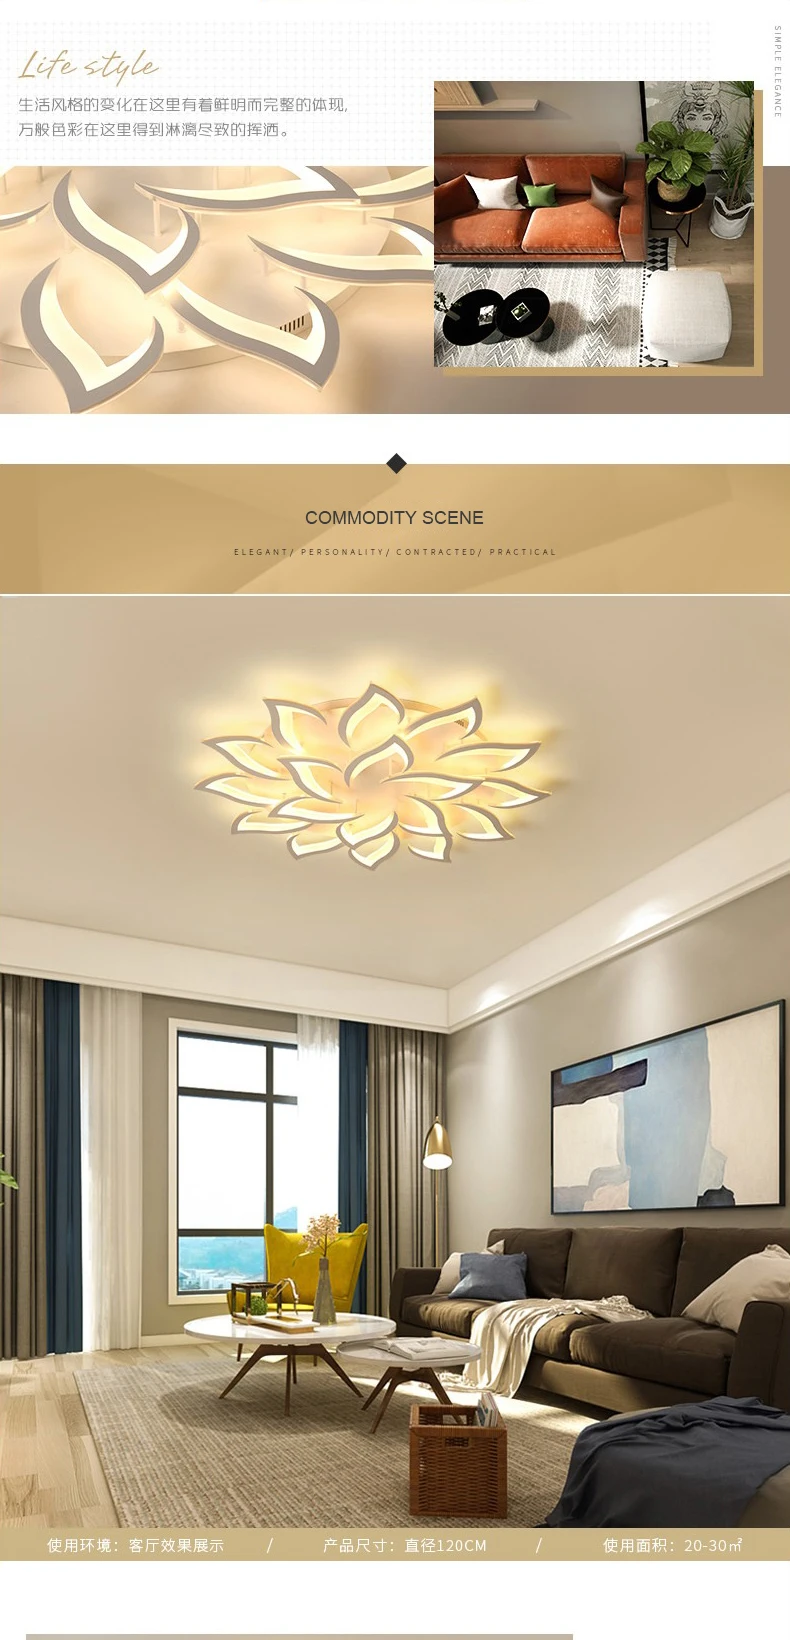 LICAN Lustre люстра светильник для гостиной спальни поверхностного монтажа в форме цветка Современная Потолочная люстра светильник ing люстра